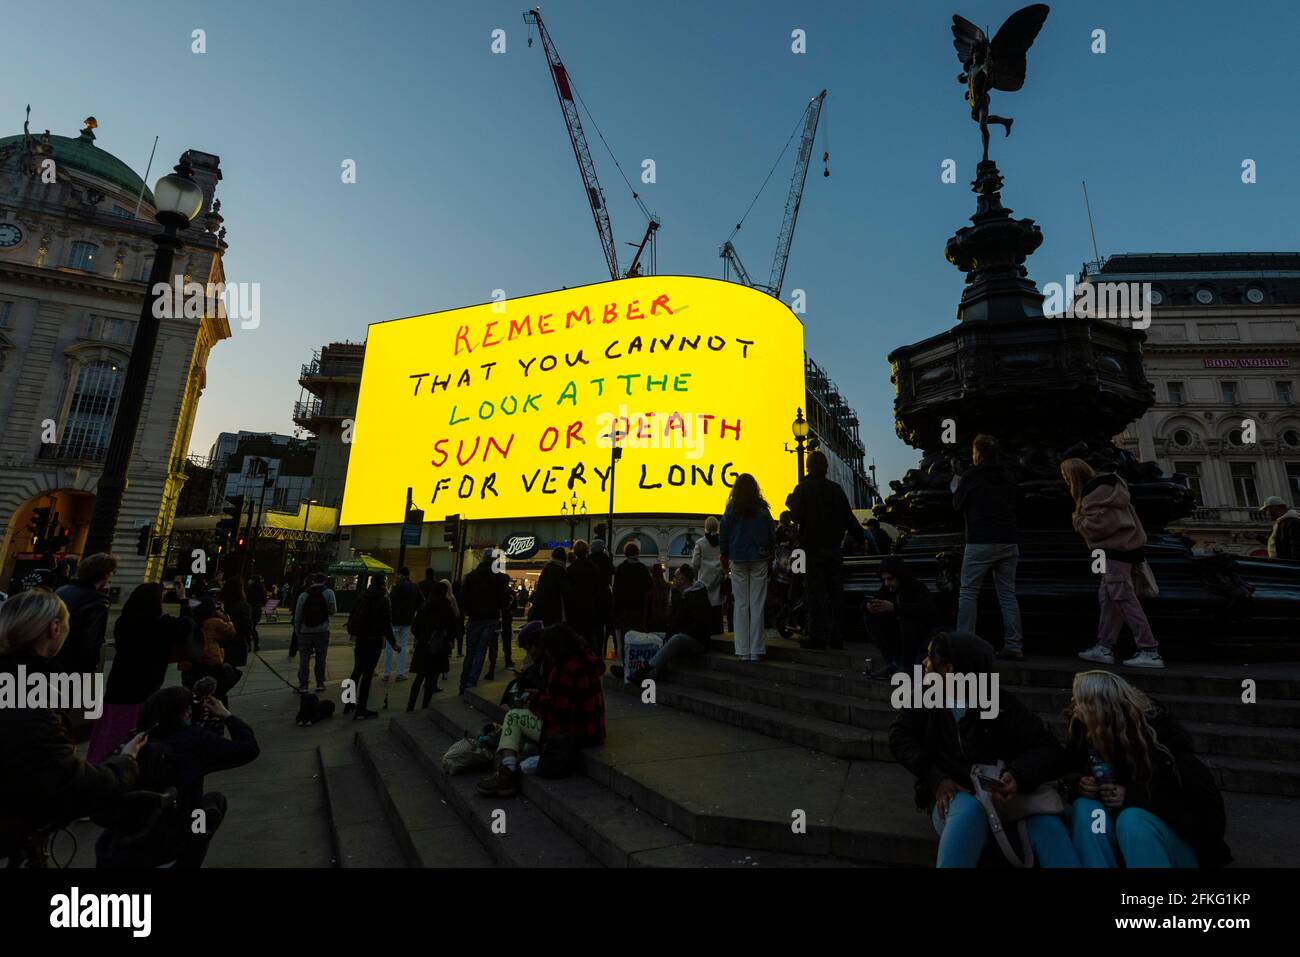 Londres, Royaume-Uni. 1er mai 2021. L’œuvre de David Hockney, « Remember You cannot look at the Sun or Death for Very long », qui montre un lever de soleil animé, est affichée sur les écrans géants de Piccadilly Circus. Il sera également affiché sur des écrans dans d'autres villes du monde entier. L'œuvre, créée sur un iPad, est censée offrir un symbole d'espoir alors que le monde se réveille de son long verrouillage et coïncide également avec sa prochaine exposition « l'arrivée du printemps » à l'Académie royale. À Londres, le travail est exposé tous les soirs pour le mois de mai. Credit: Stephen Chung / Alamy Live News Banque D'Images